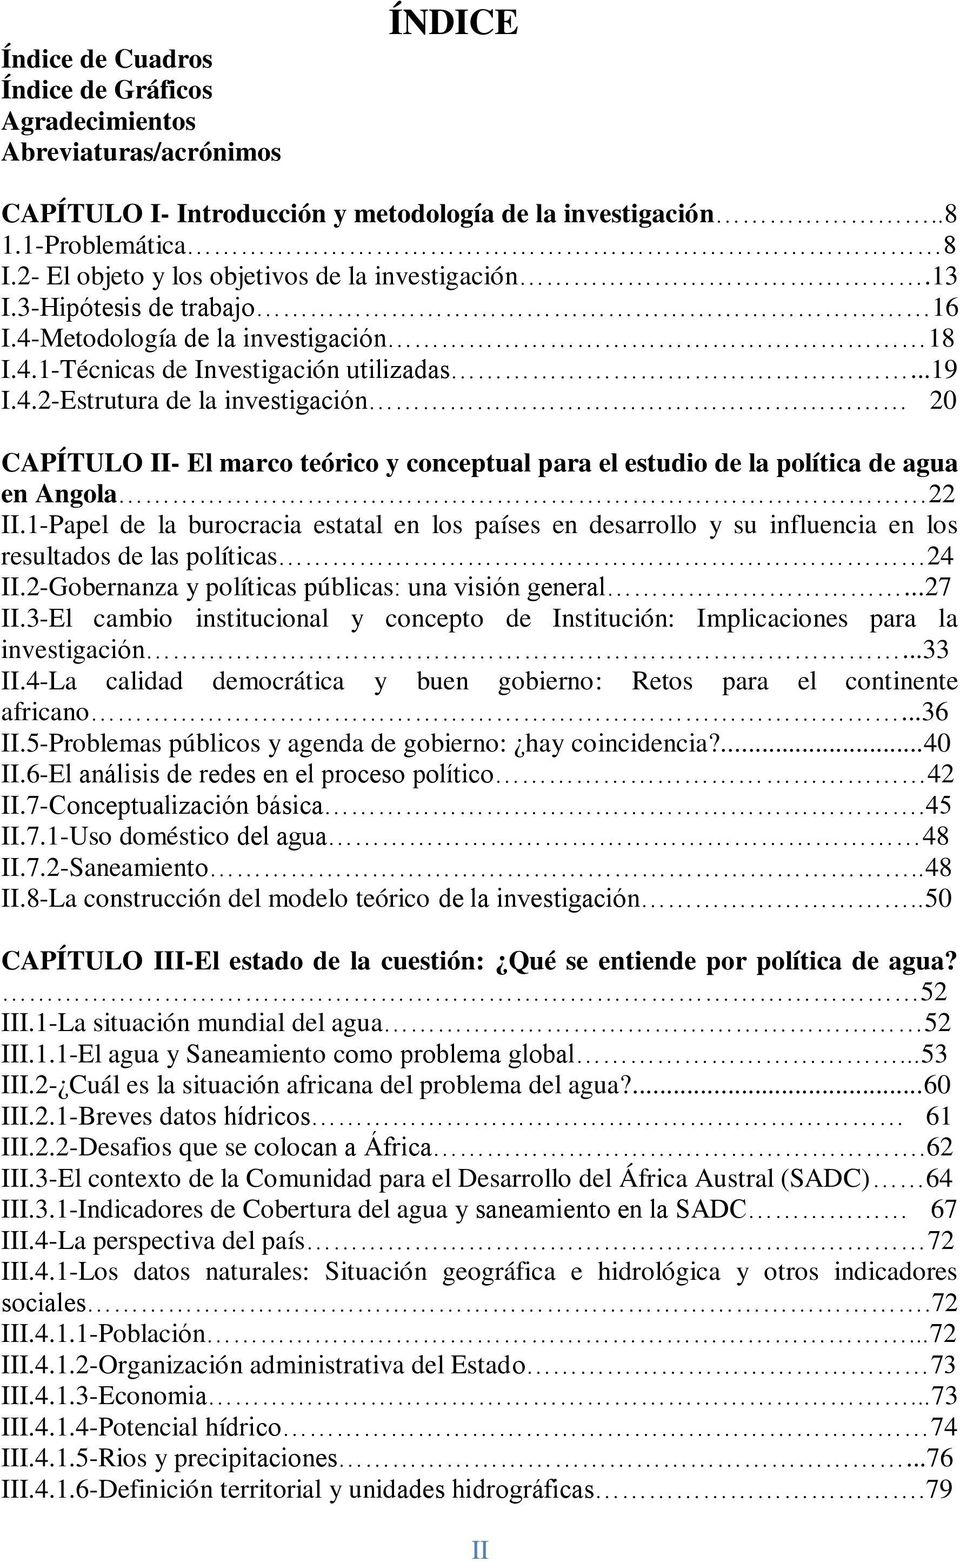 Metodología de la investigación 18 I.4.1-Técnicas de Investigación utilizadas...19 I.4.2-Estrutura de la investigación 20 CAPÍTULO II- El marco teórico y conceptual para el estudio de la política de agua en Angola 22 II.